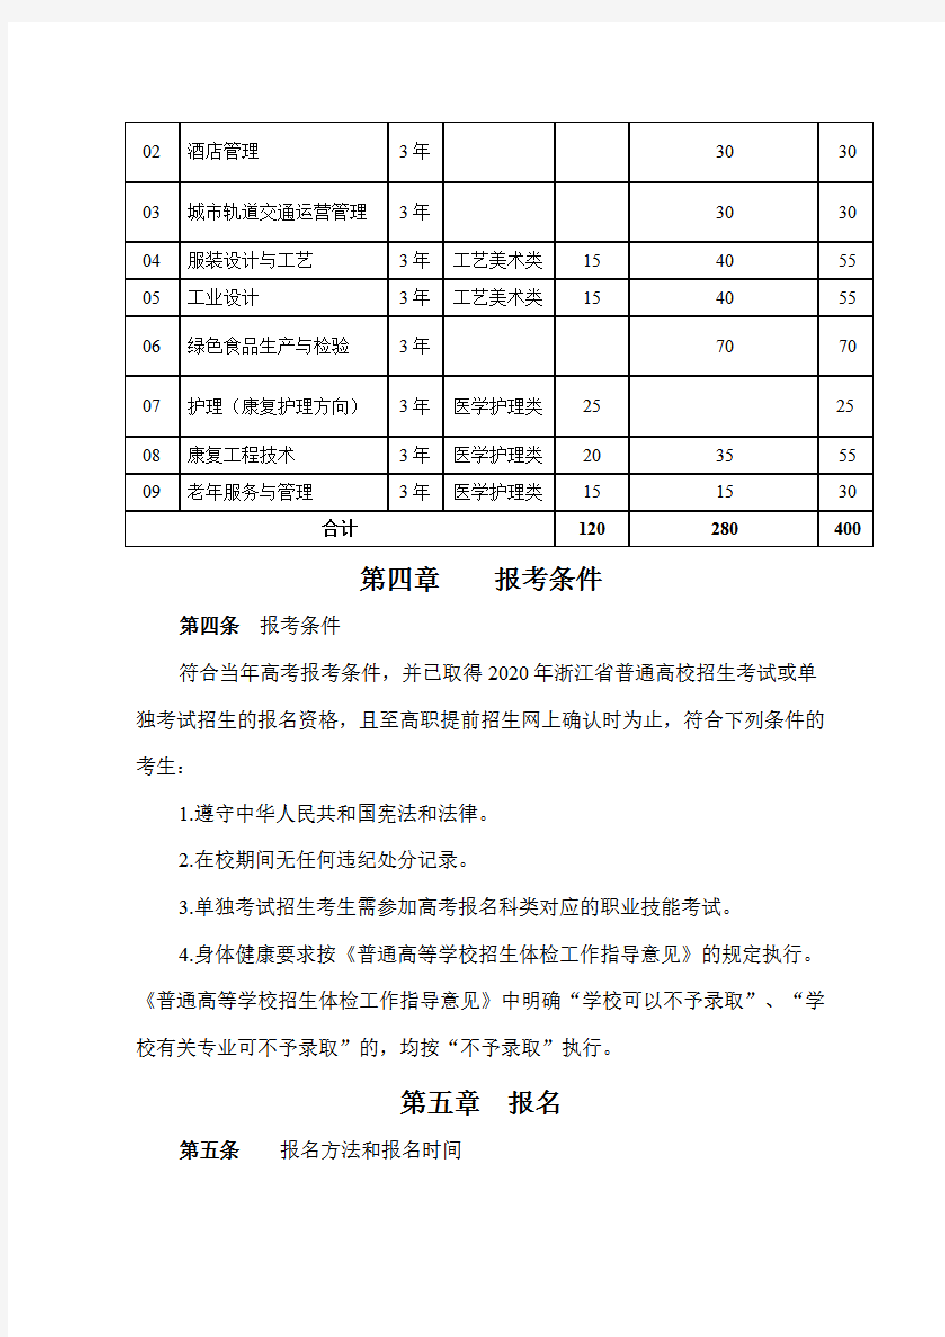 杭州万向职业技术学院2020年高职提前招生章程0